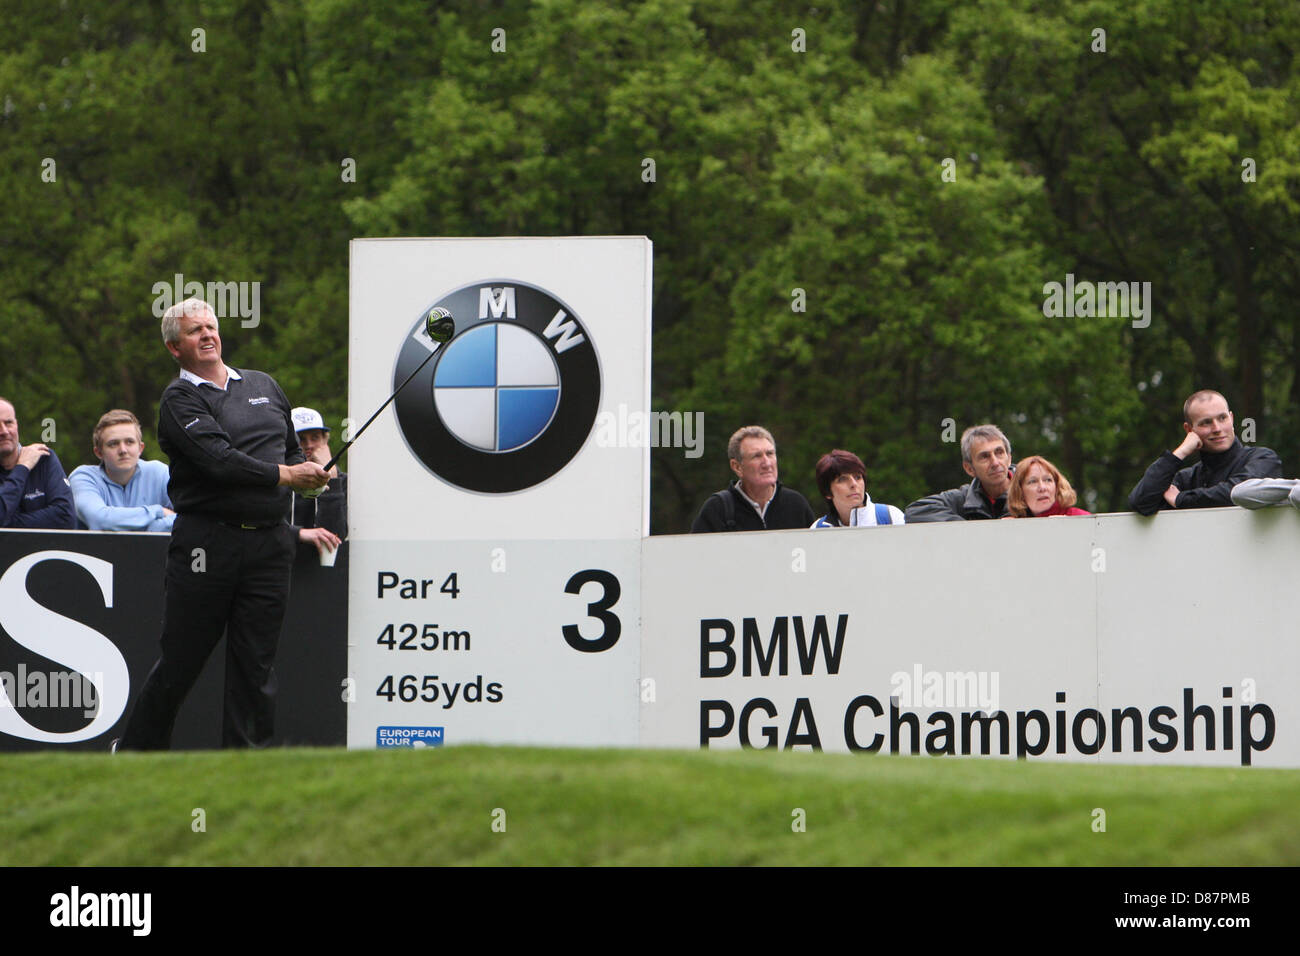 21.05.2013 Wentworth, England. Colin MONTGOMERIE während des Trainings vor der BMW PGA Championships. Stockfoto